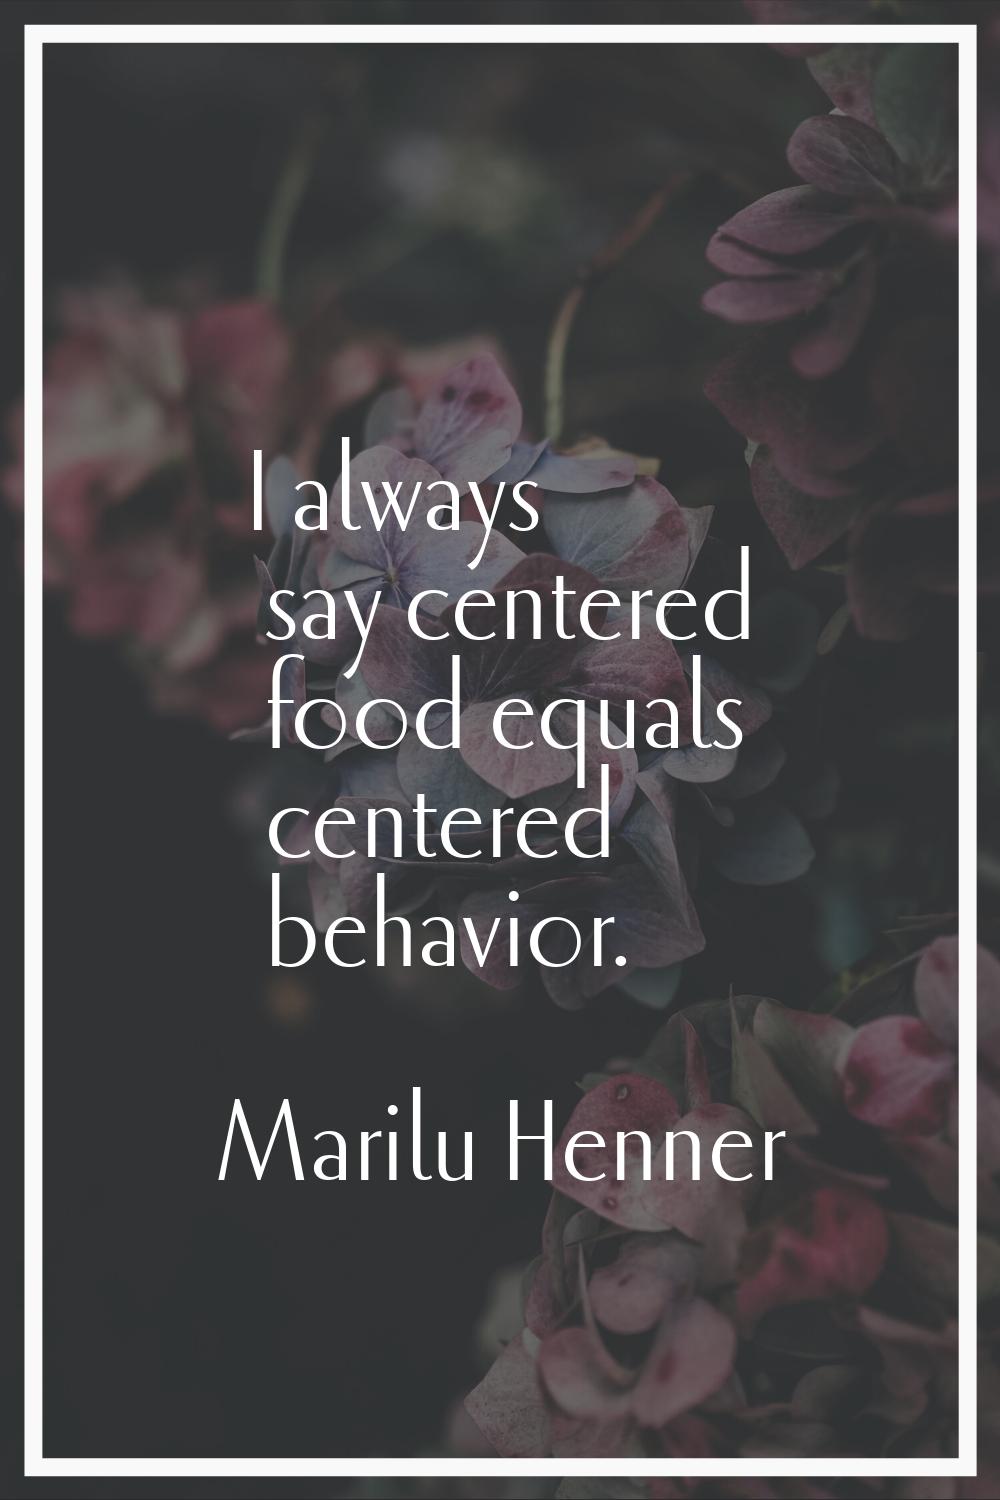 I always say centered food equals centered behavior.